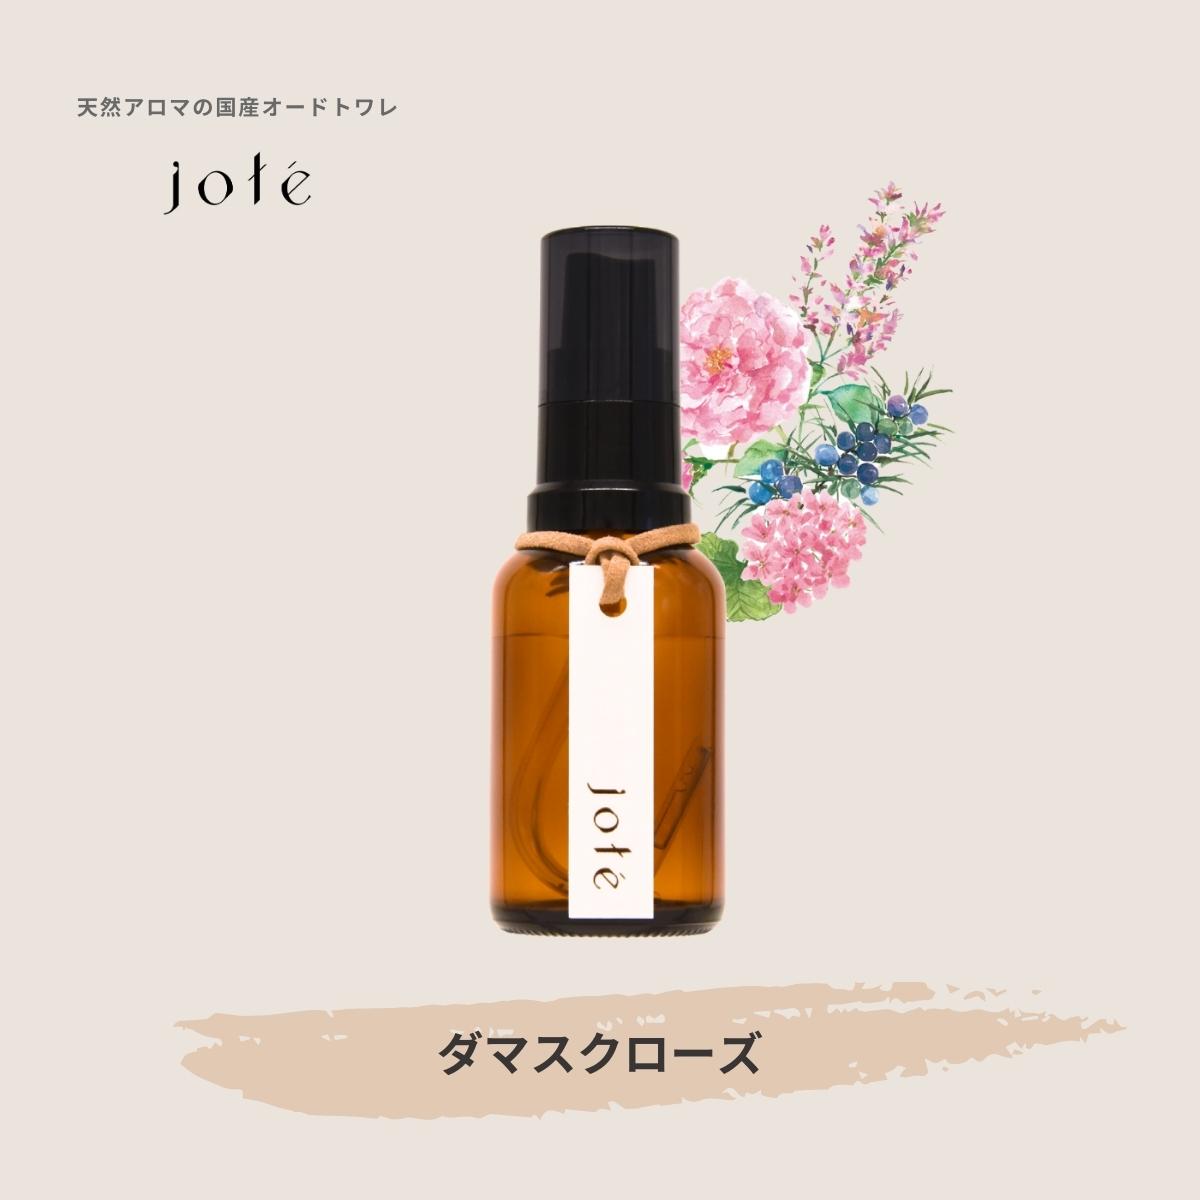 jote ♯3（シャープ３）Perfume 香水 オードトワレ オーガニック ダマスク ローズ バラ 天然香料 天然 アロマ